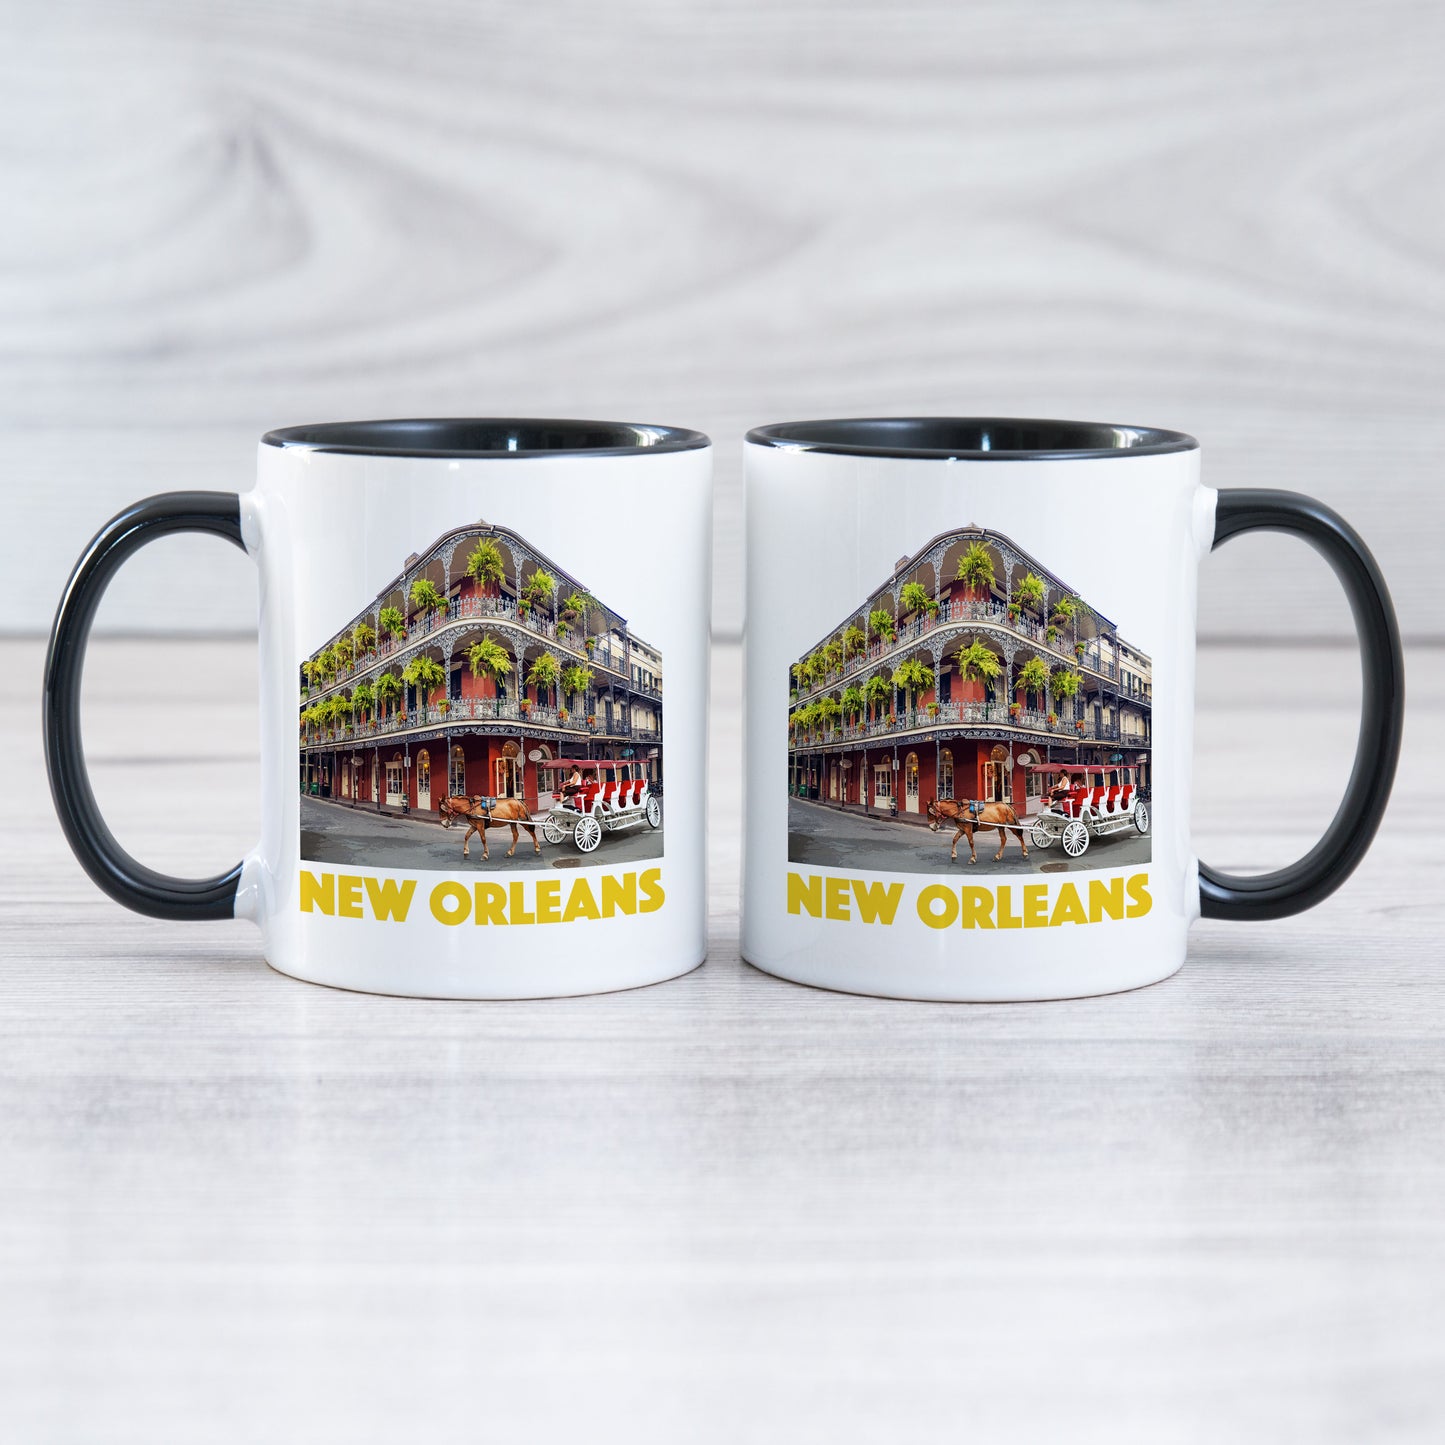 New Orleans - Ceramic Mug - Vintaprints